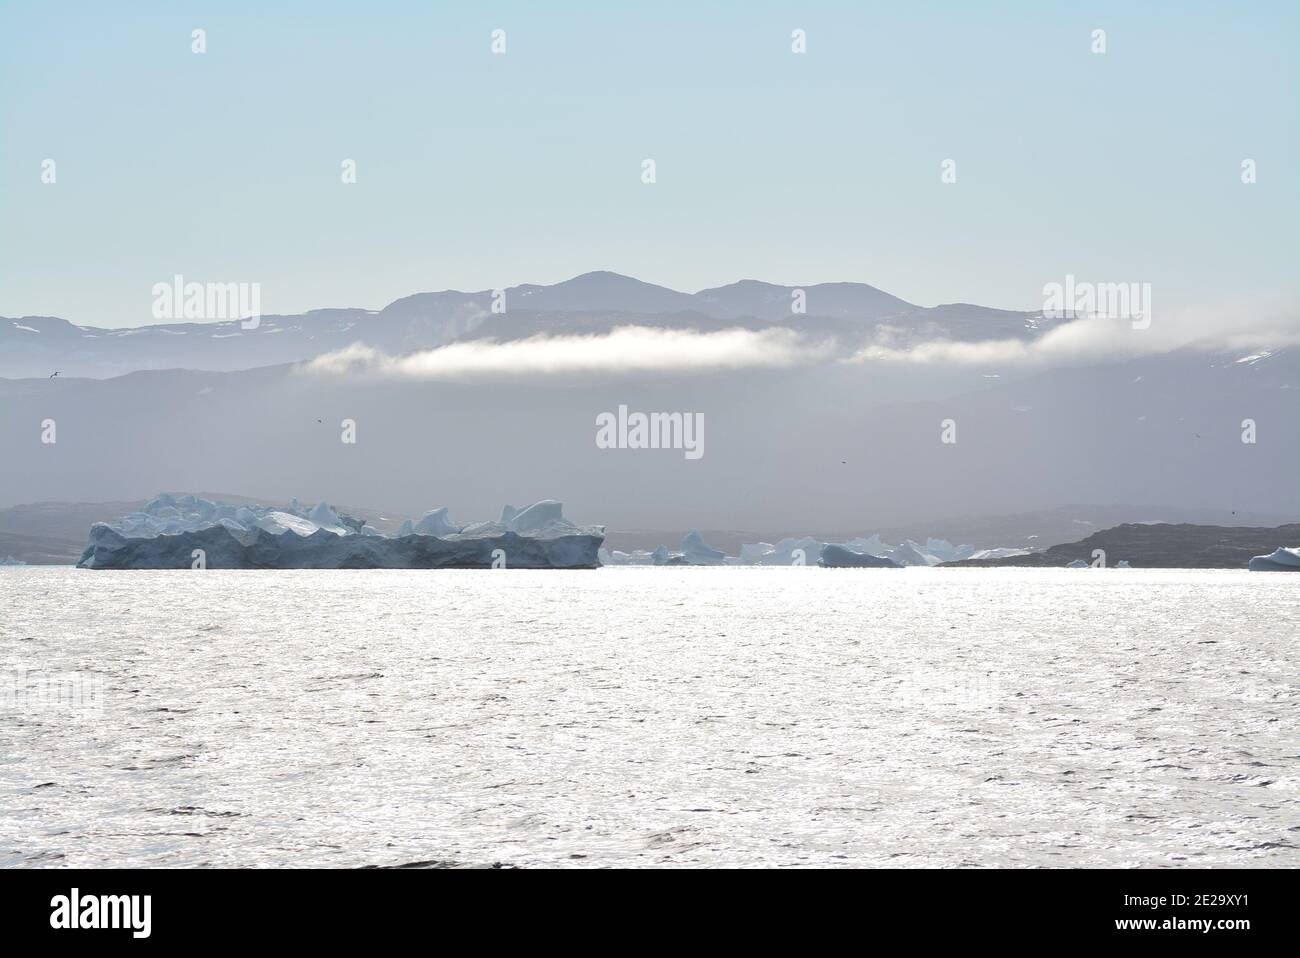 Disko Bay, Grönland - Juli - Bootsfahrt am Morgen über das arktische Meer - Baffin Bay - kalte und frische Luft und große schöne Eisberge, ruhige Momente Stockfoto